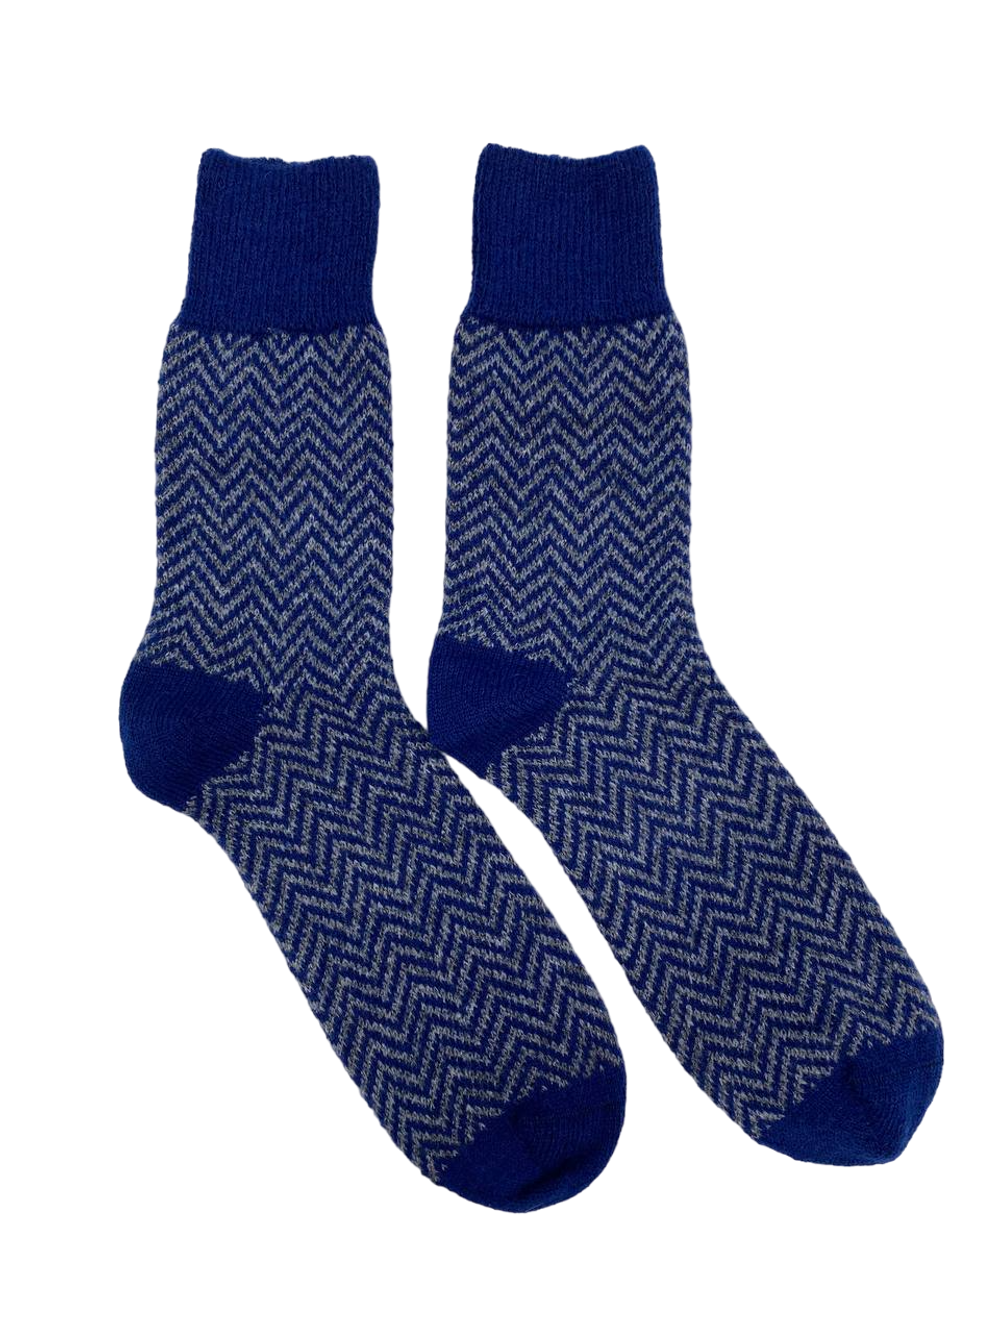 Теплые пуховые носки  Н019-11/03 синий/серый